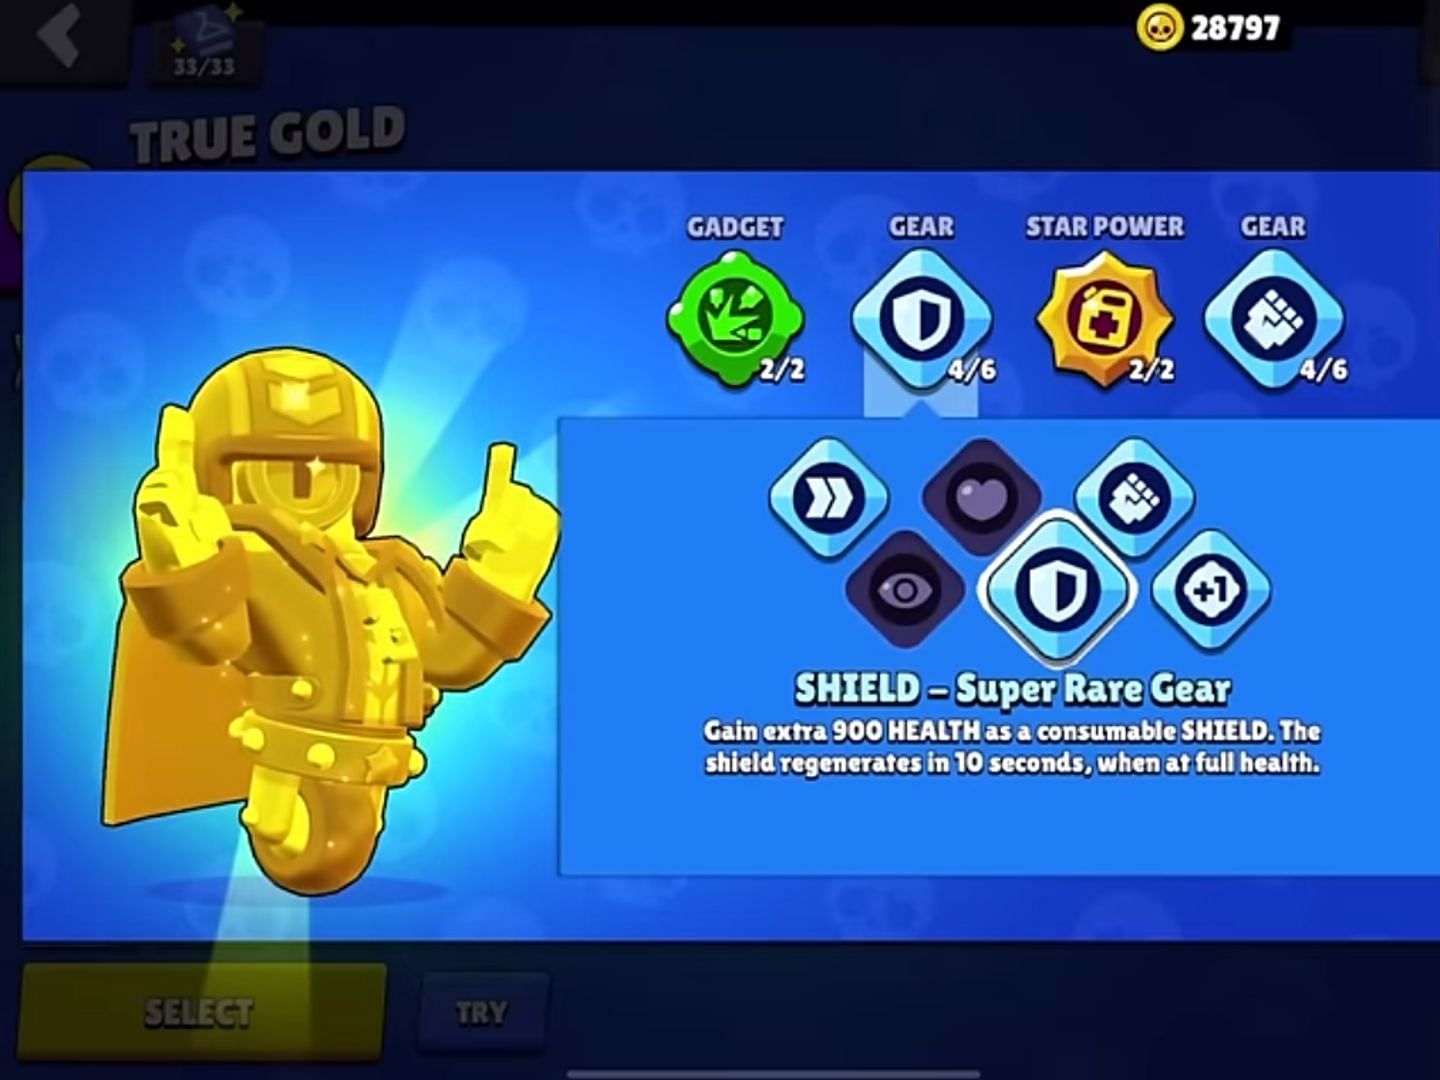 Shield - Super Rare Gear (Image via Supercell)